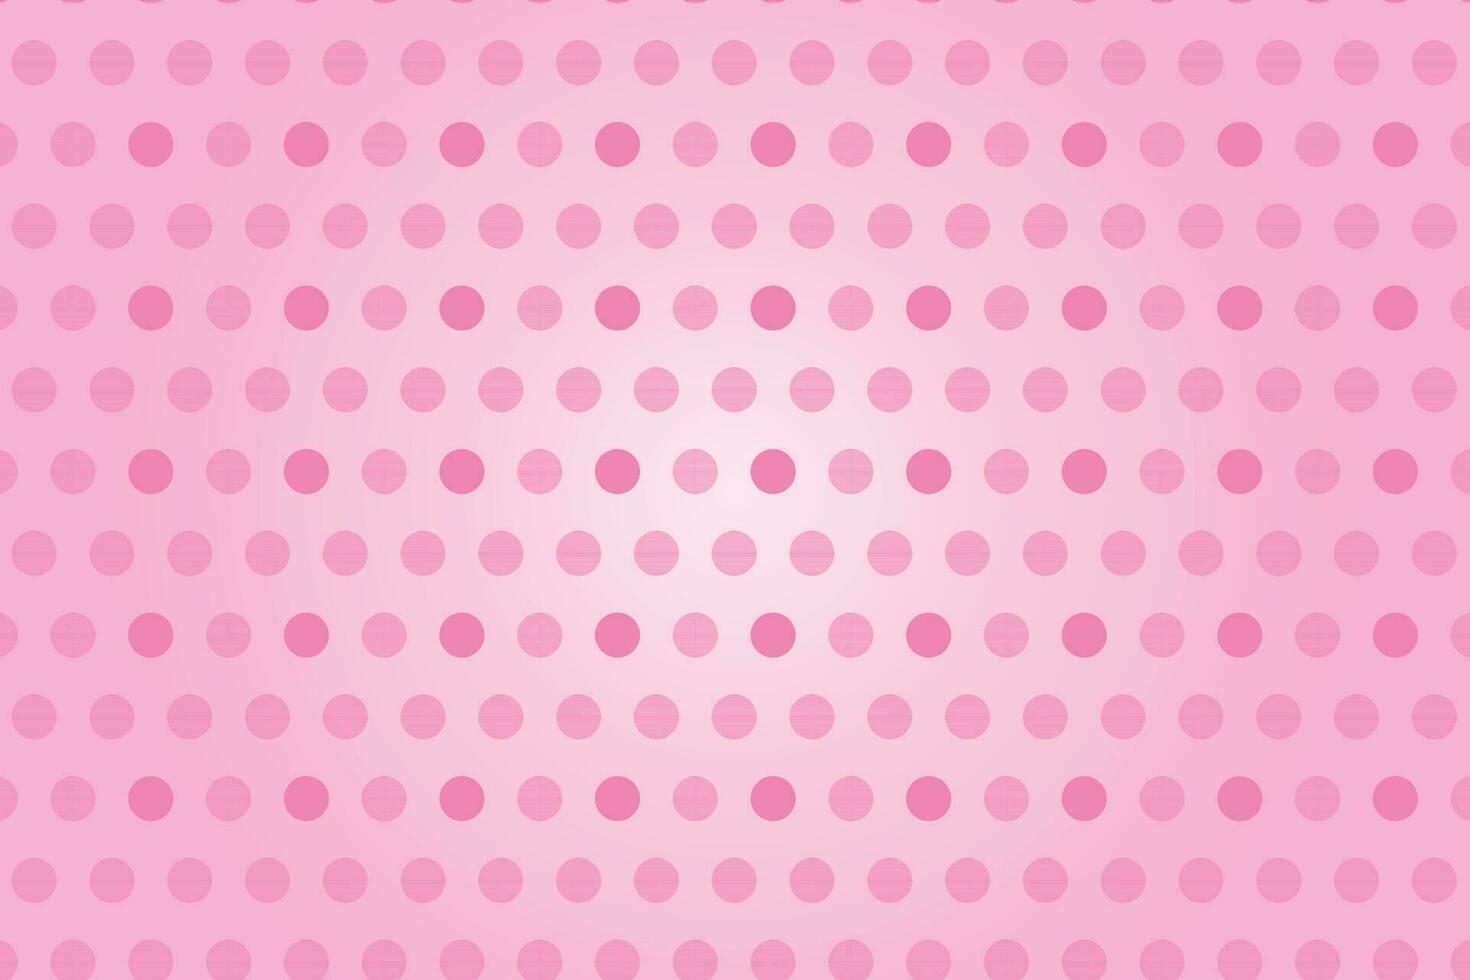 semplice astratto senza soluzione di continuità rosa colore polka punto modello vettore